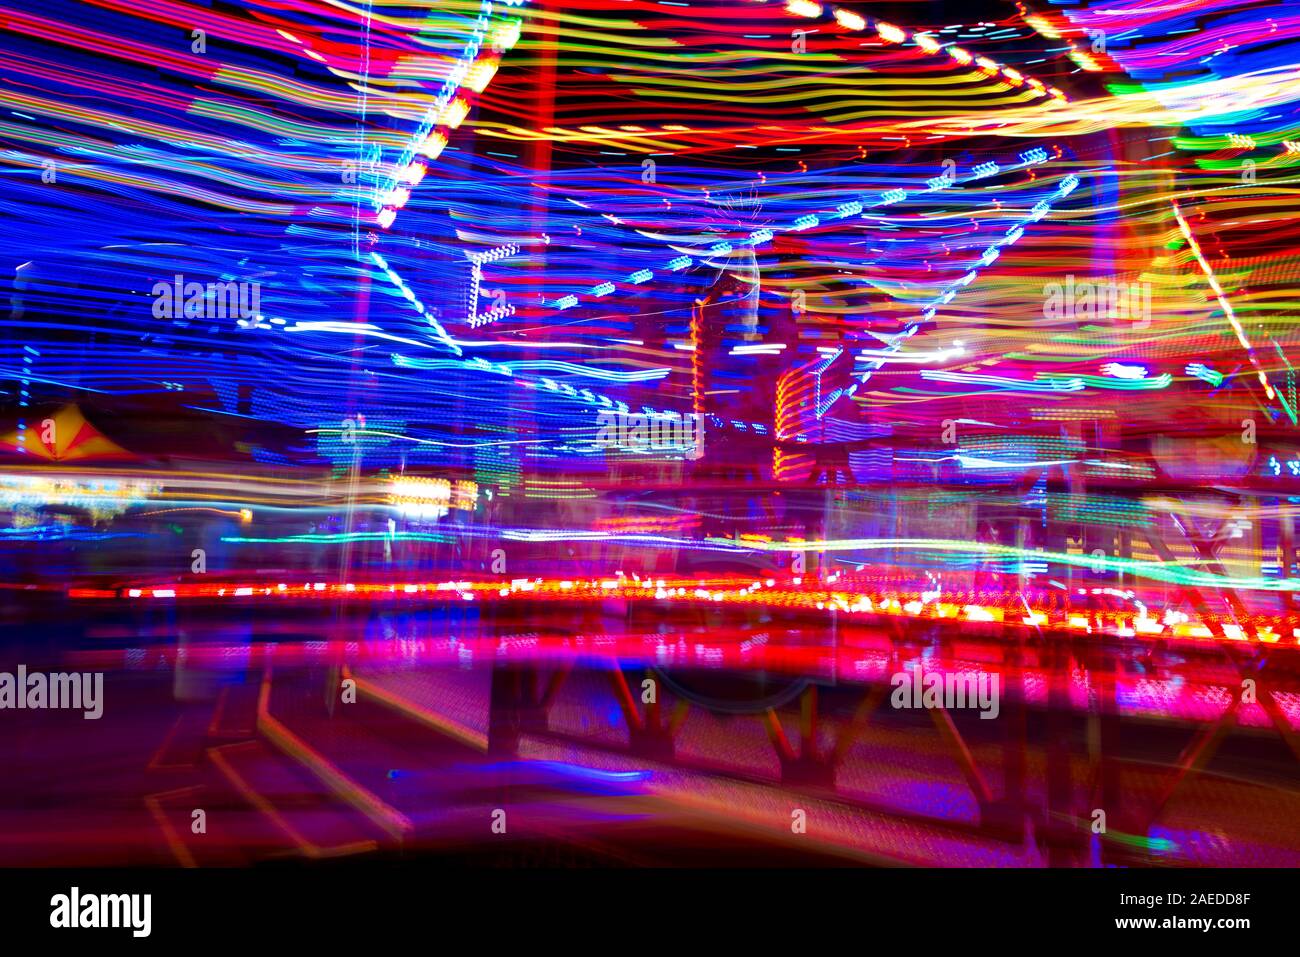 Las luces multicolores de un carnaval ride blur como el paseo de los espines en la noche. Foto de stock